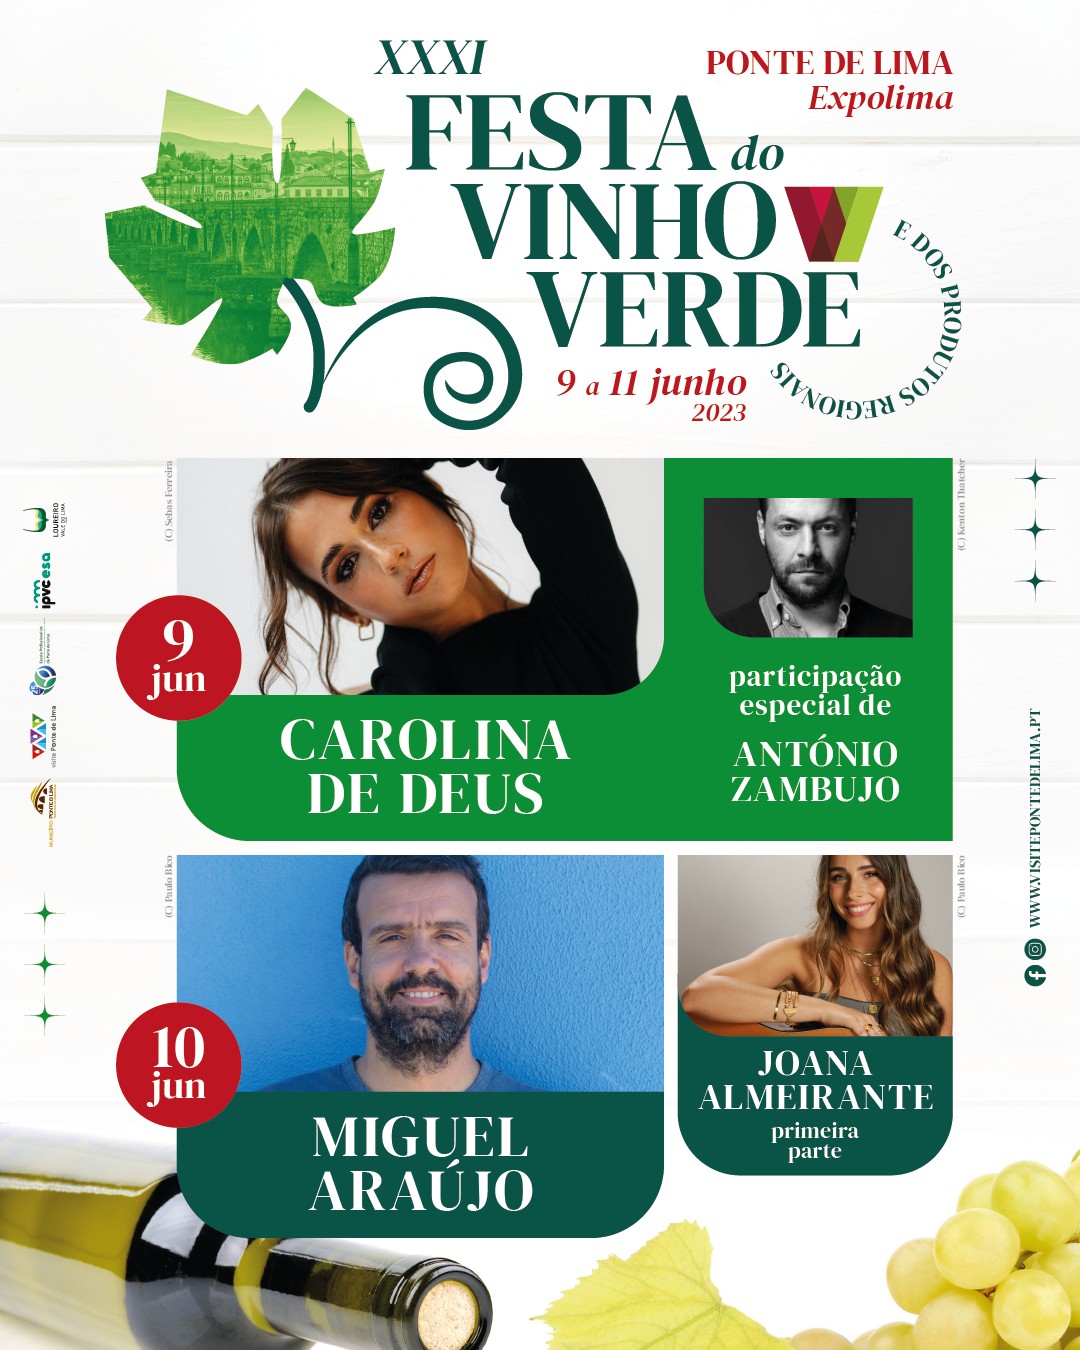 31ª Festa do Vinho Verde - Ponte de Lima